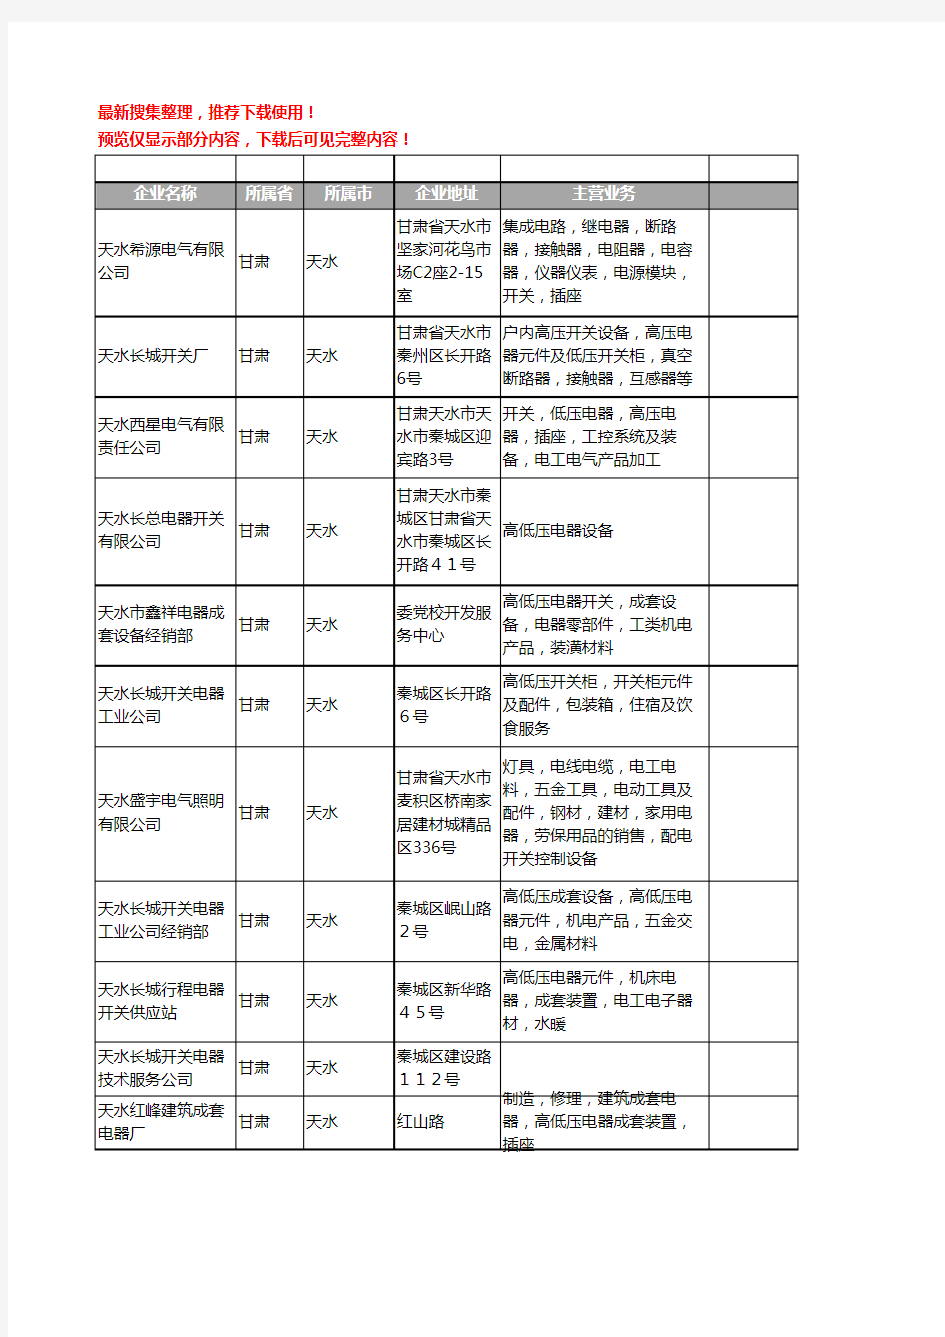 新版甘肃省开关电器工商企业公司商家名录名单联系方式大全40家